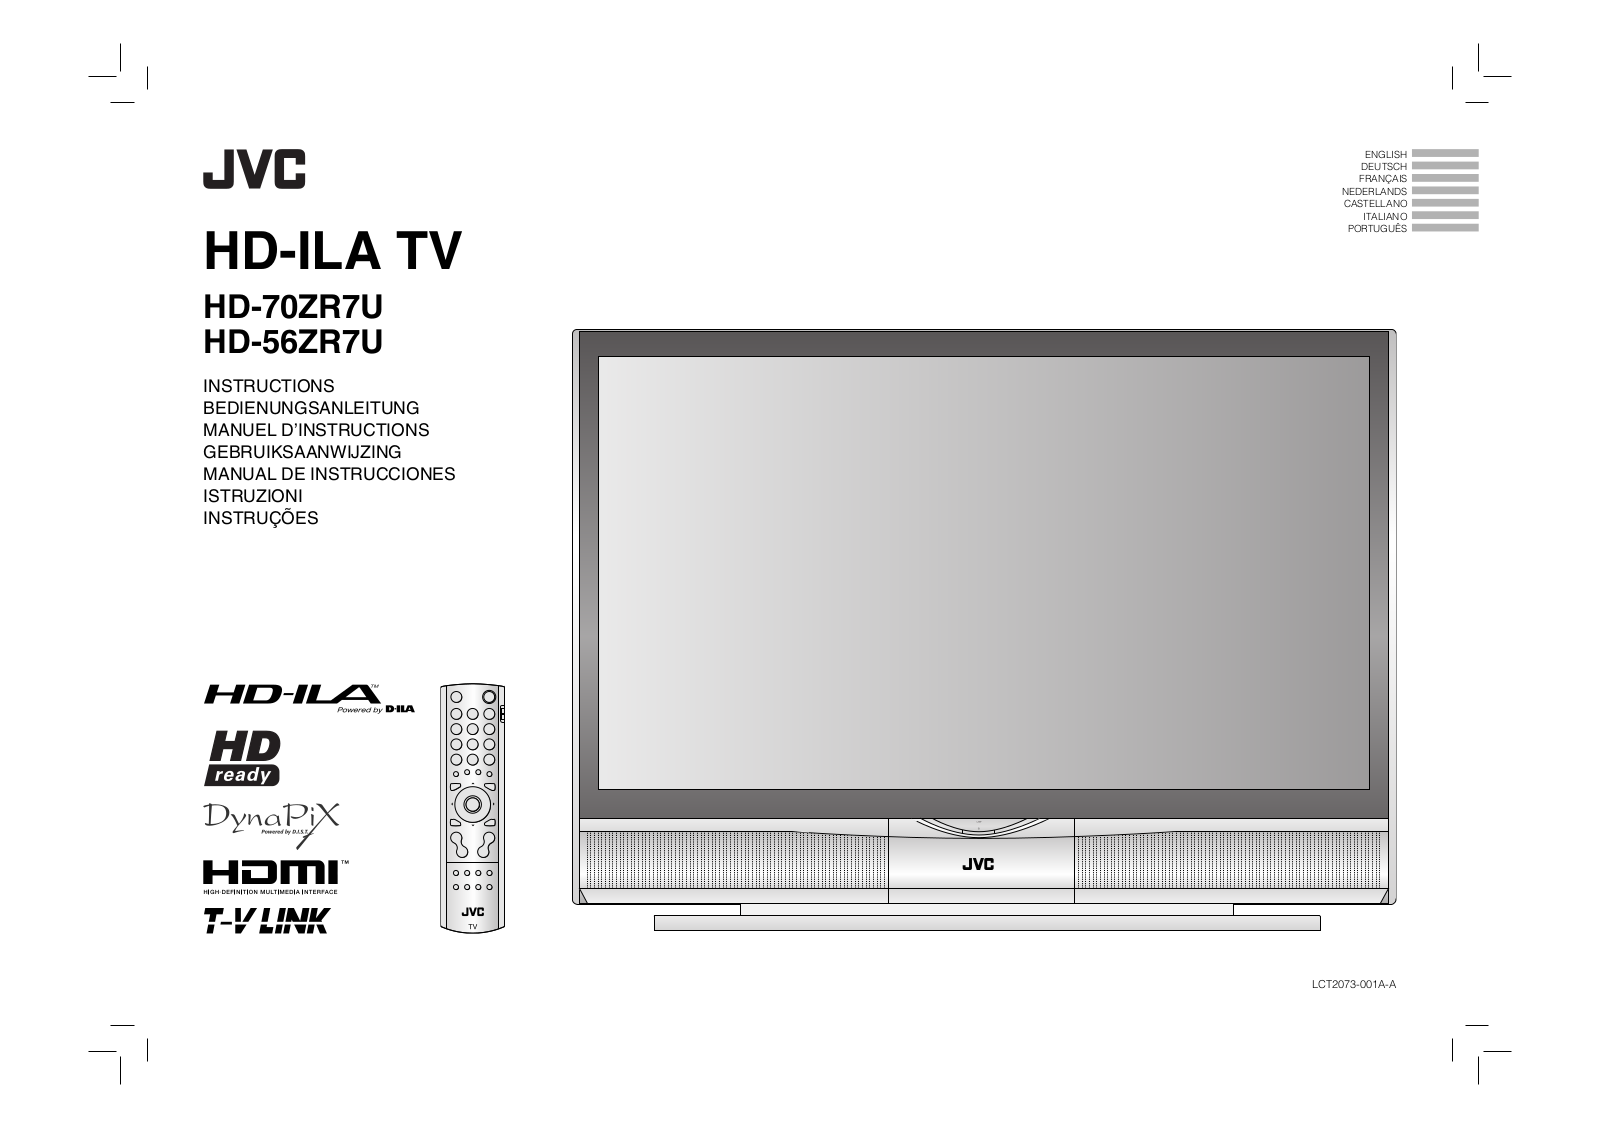 JVC HD-56ZR7U, HD-70ZR7U, HD-ILA TV User Manual 2